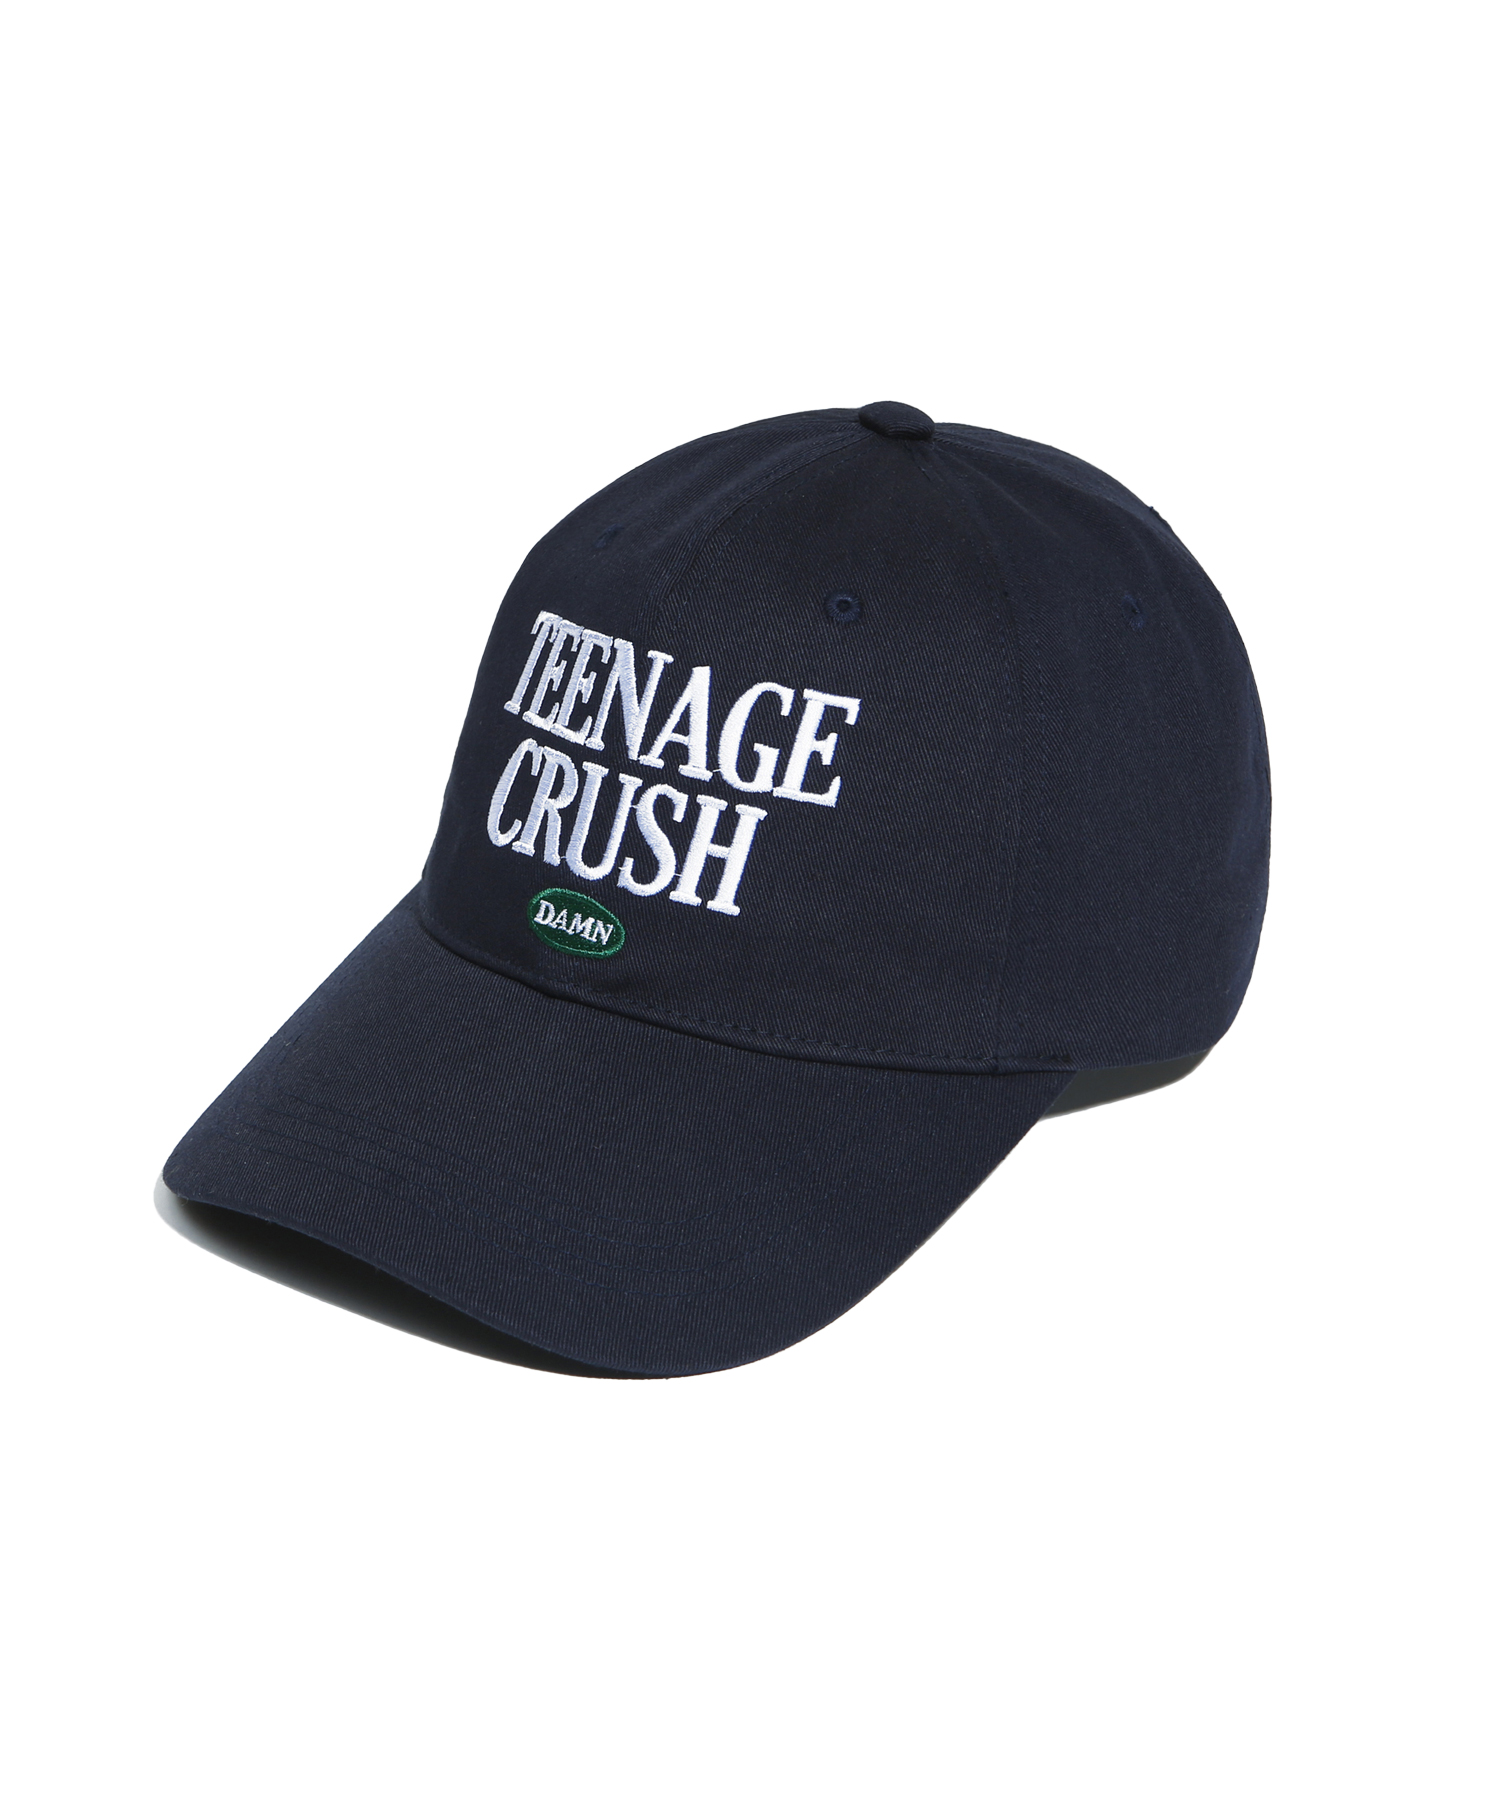 TEENAGE CRUSH CAP NAVY